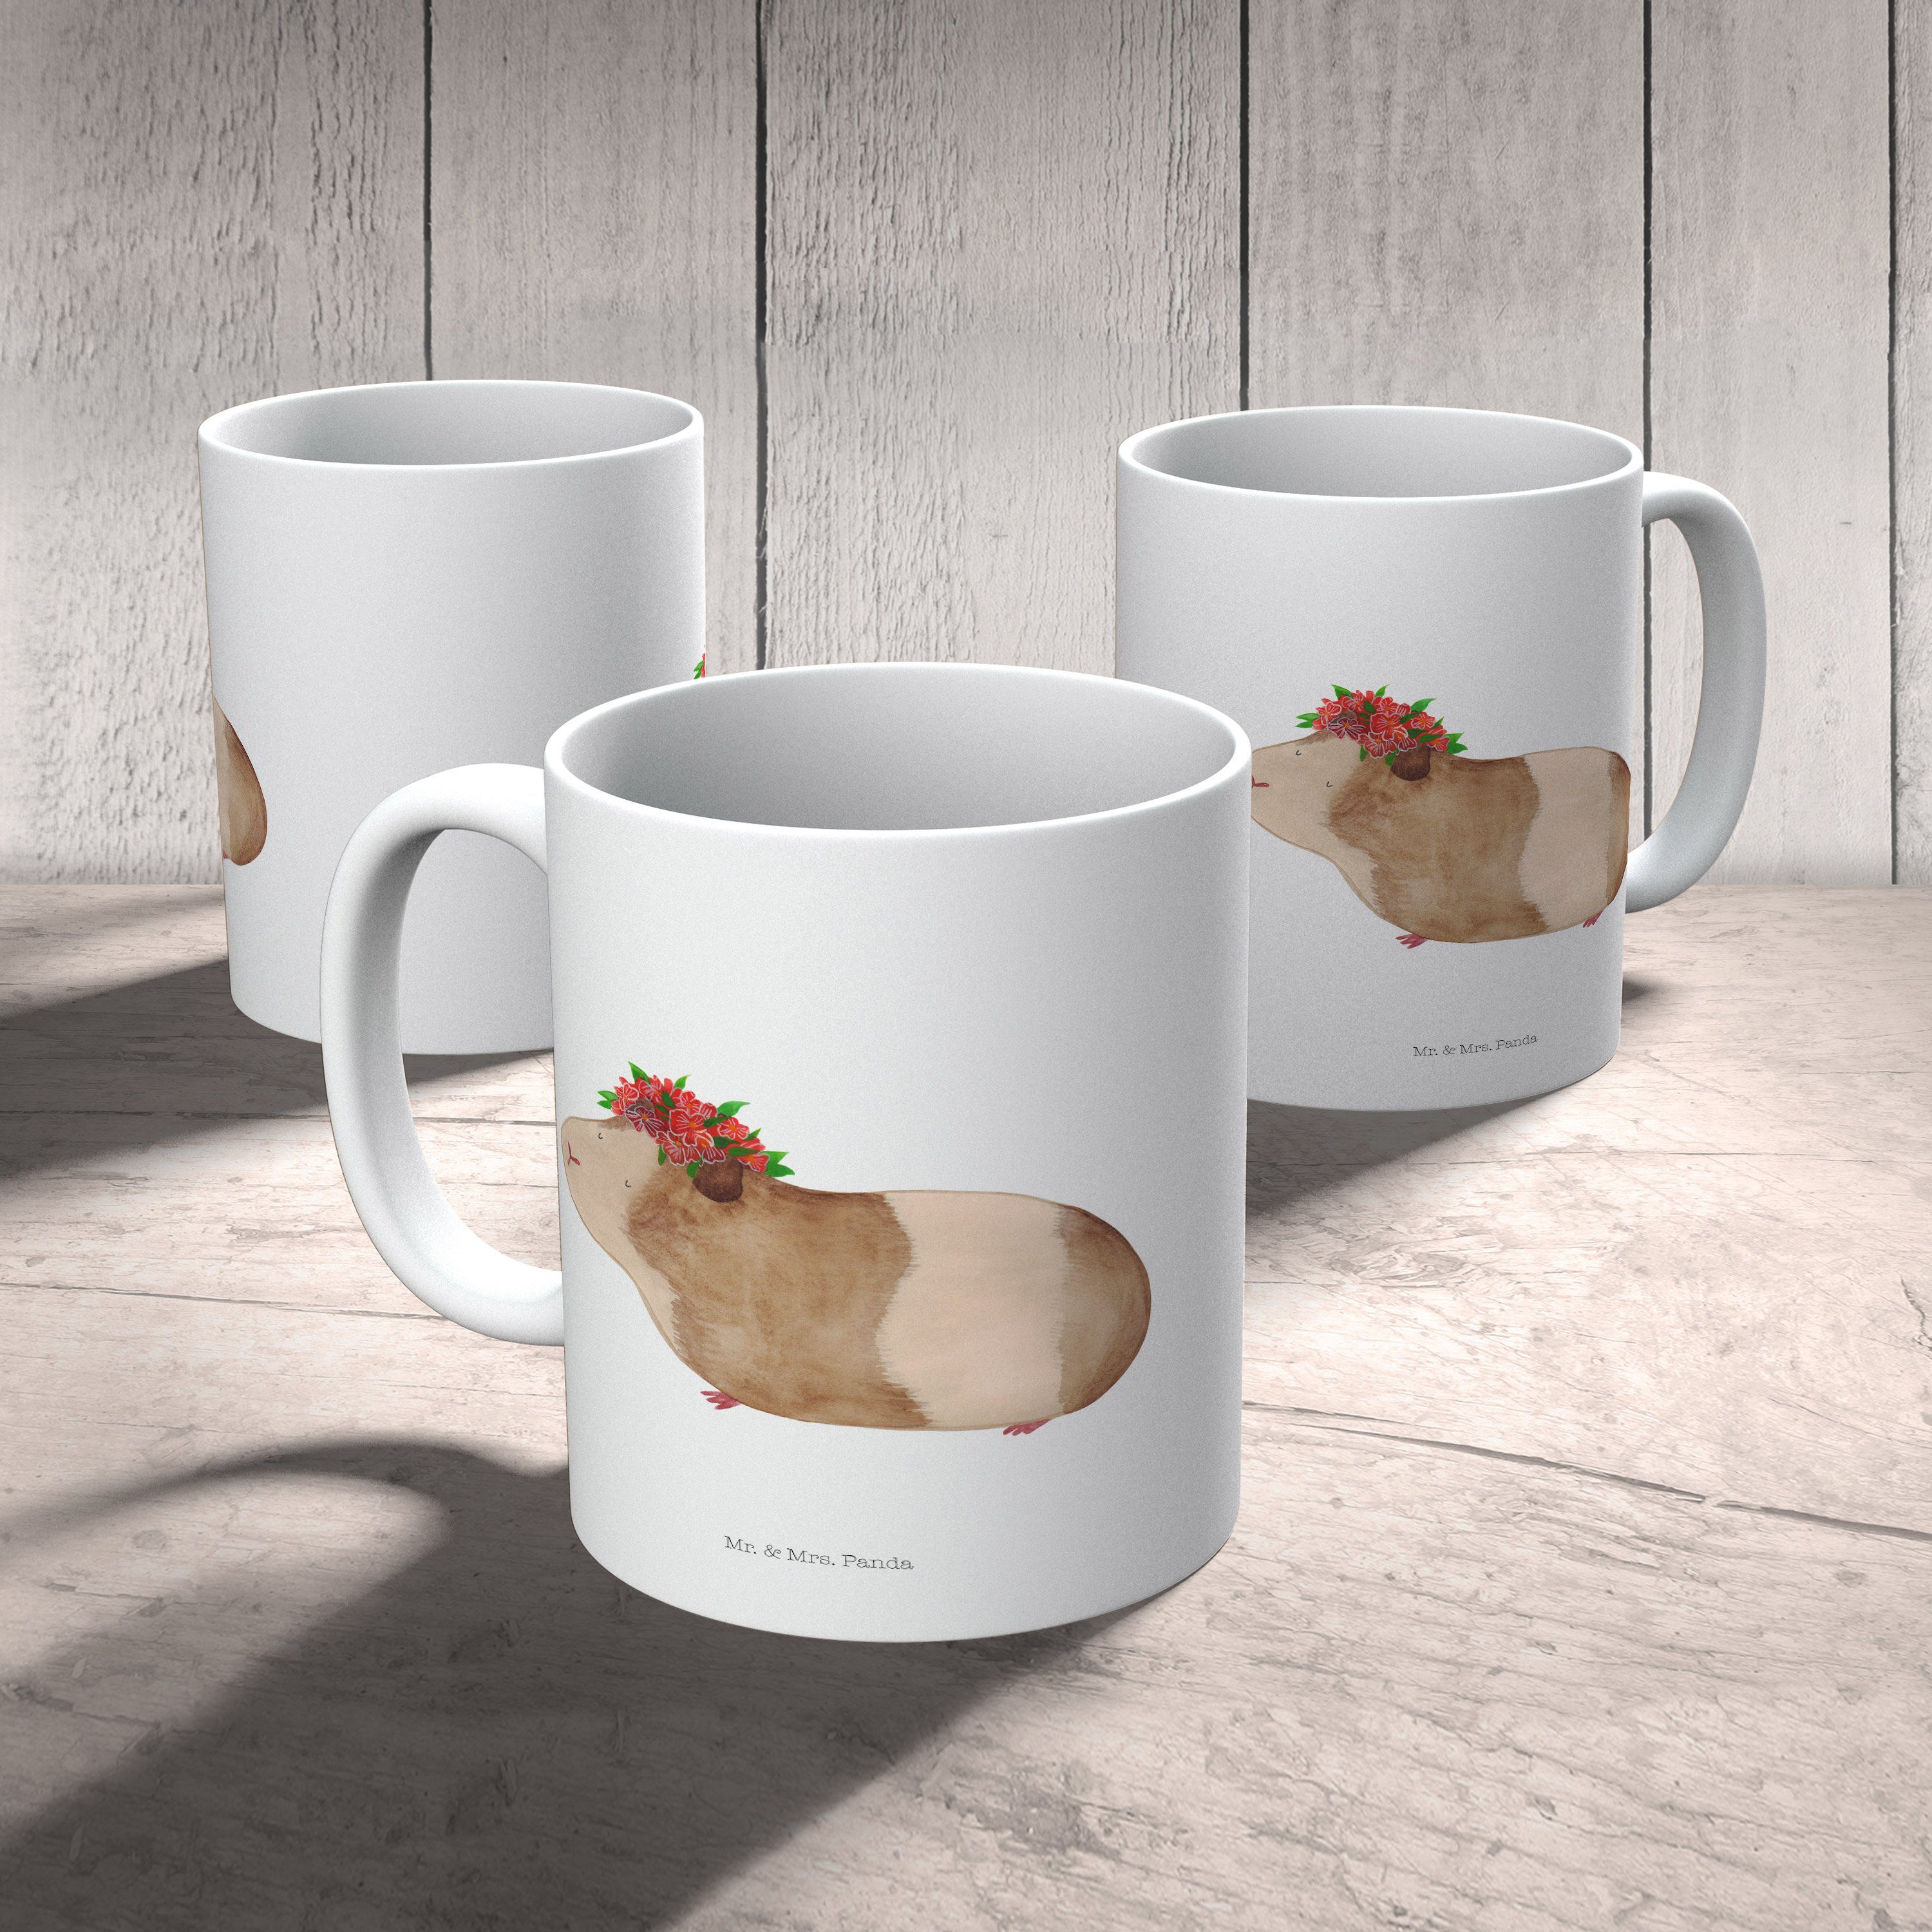 Teebecher, Mrs. Panda & Weiß Meerschweinchen weise Tasse - Geschenk, Keramik - Mr. Tas, Keramiktasse,